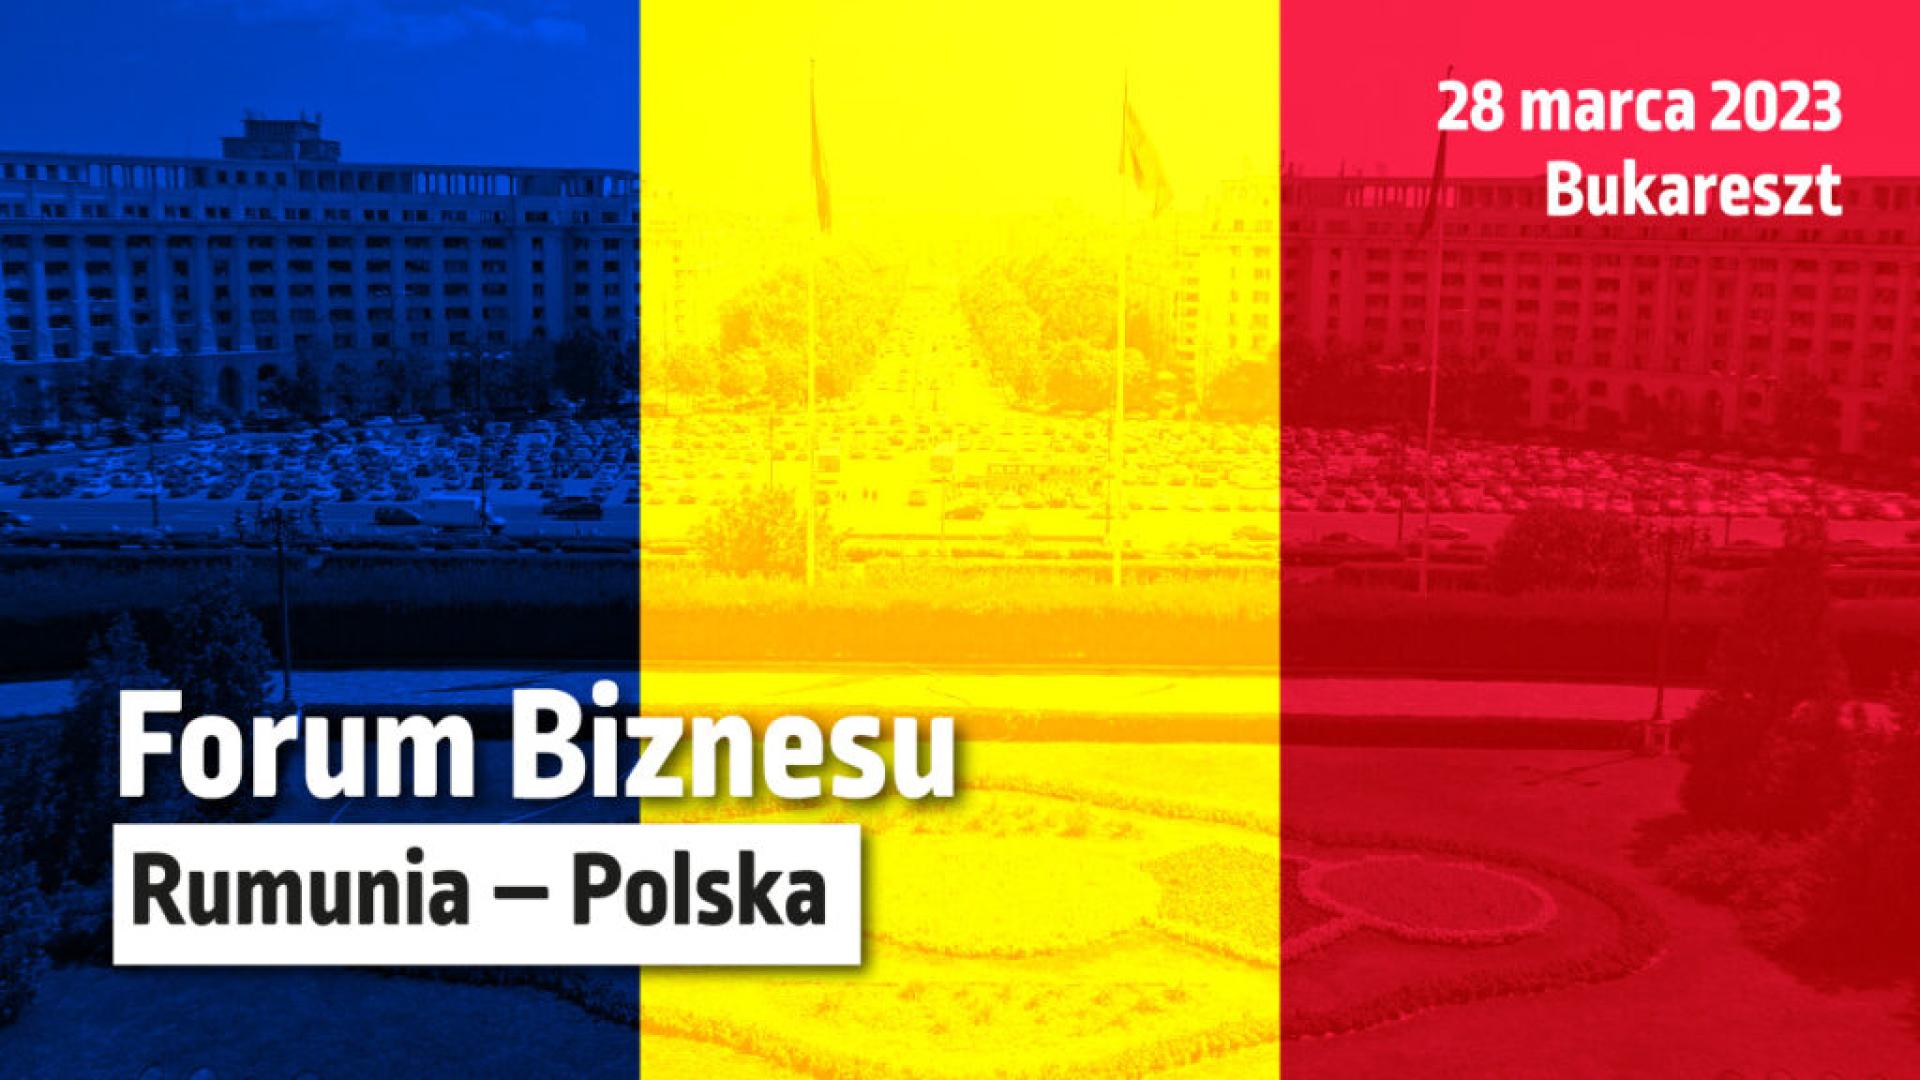 Polskie Forum Biznesu, Bukareszt, 28 marca 2023 r – zaproszenie Krajowej Izby Gospodarczej - zobacz więcej